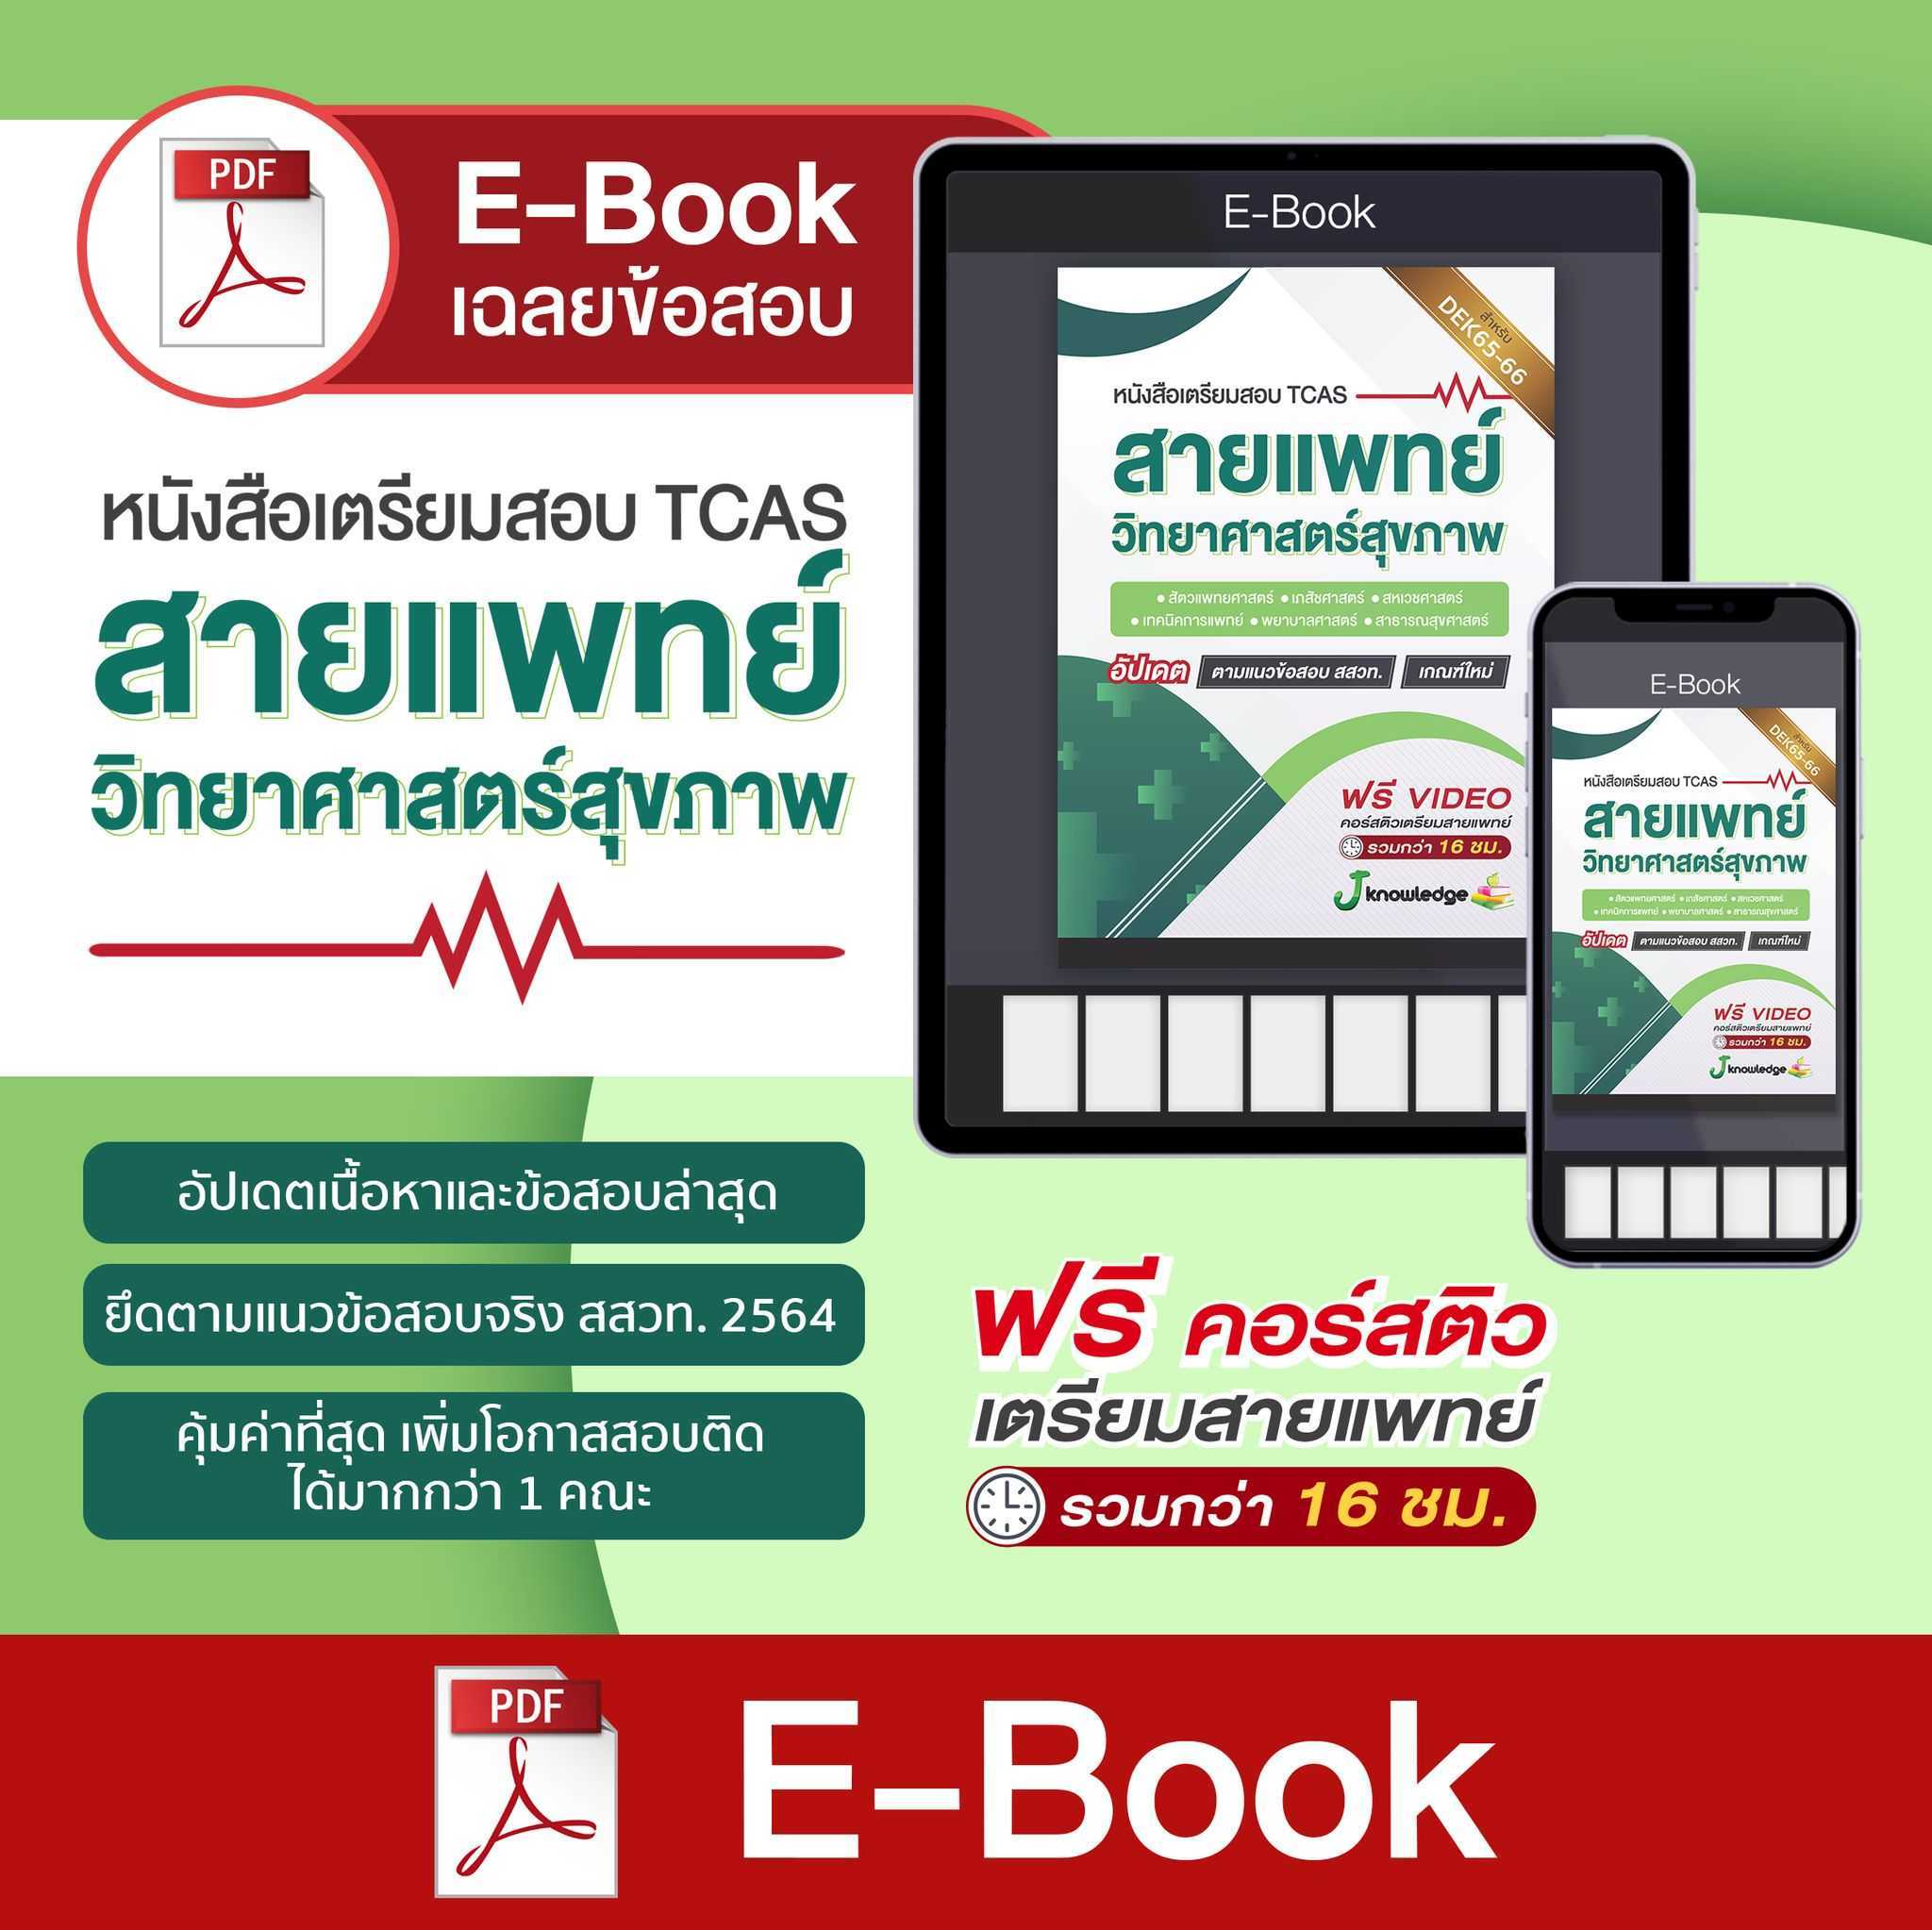 E-Book เตรียมสอบสายแพทย์ วิทยาศาสตร์สุขภาพ เกณฑ์ล่าสุดตามแนว สสวท. TCAS66